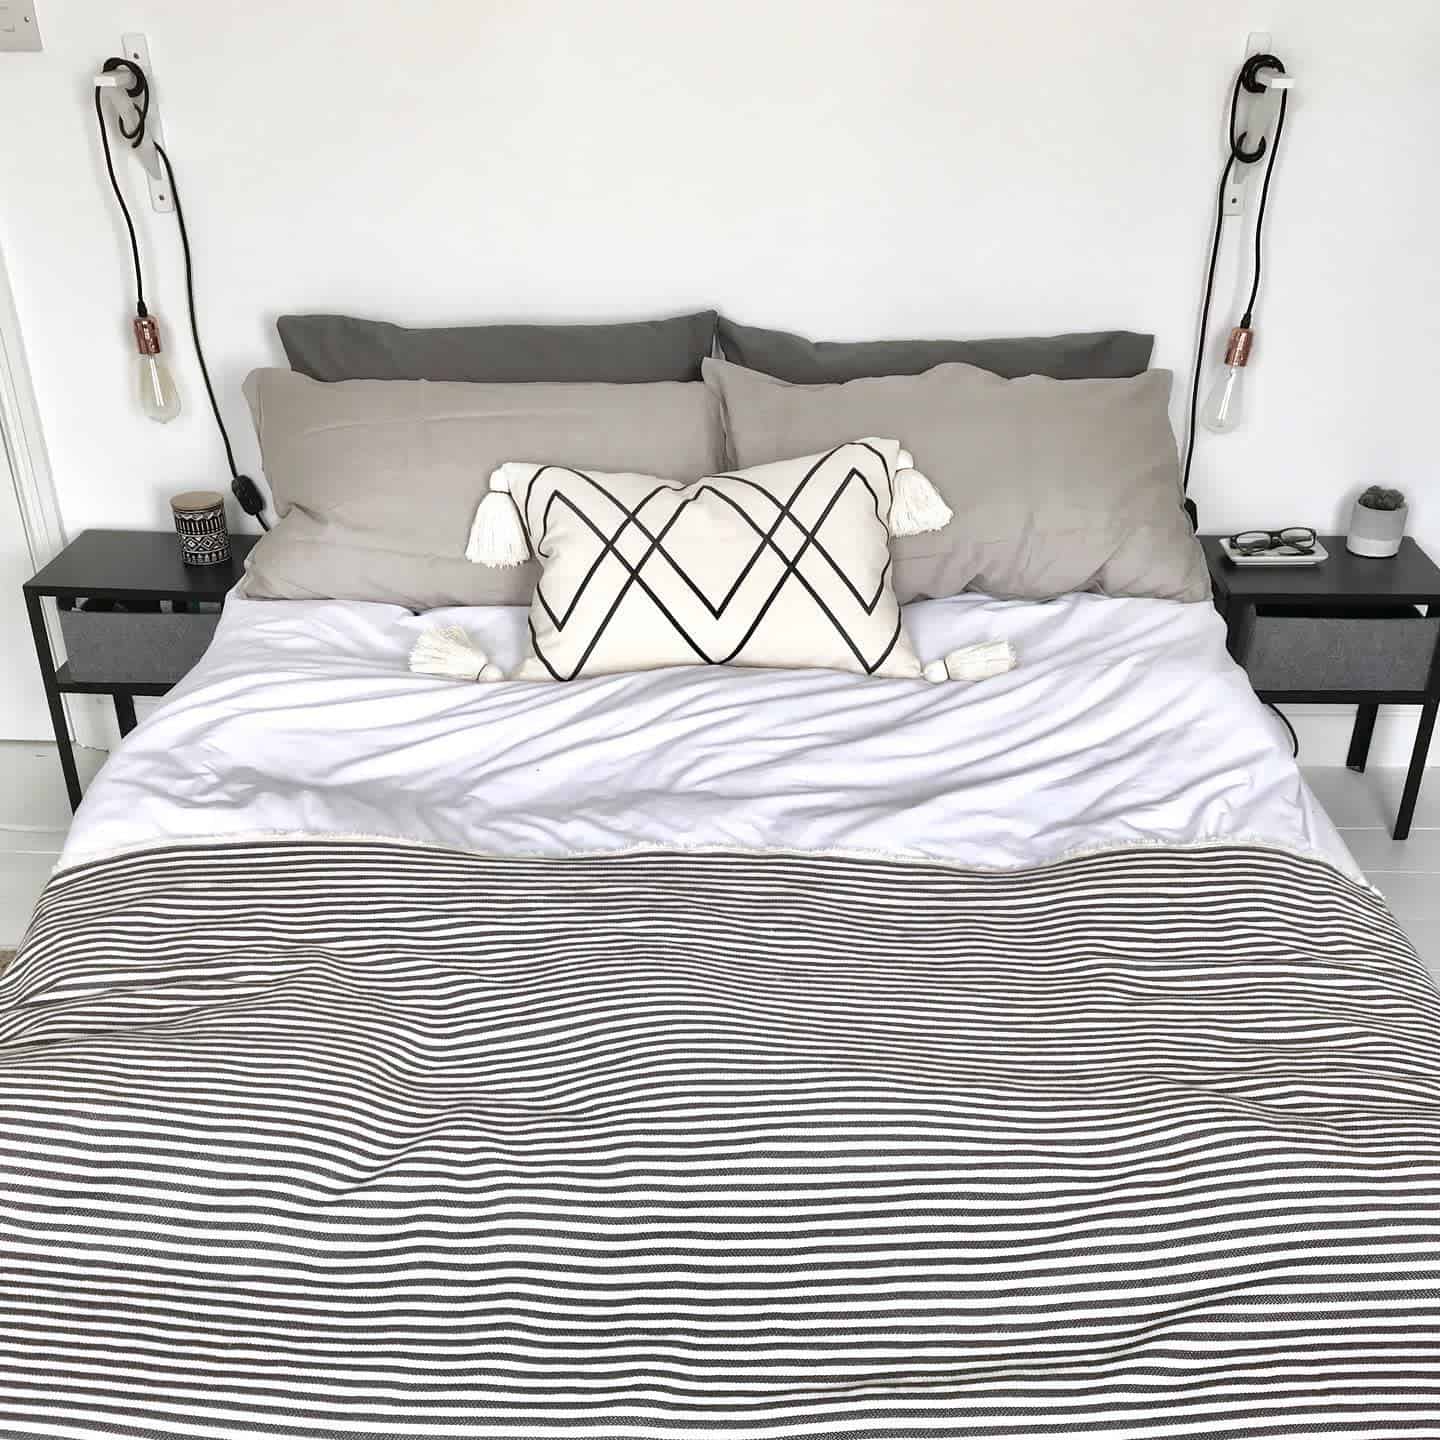 Monochrome Minimalist Bedroom Ideas Keep Things Simple